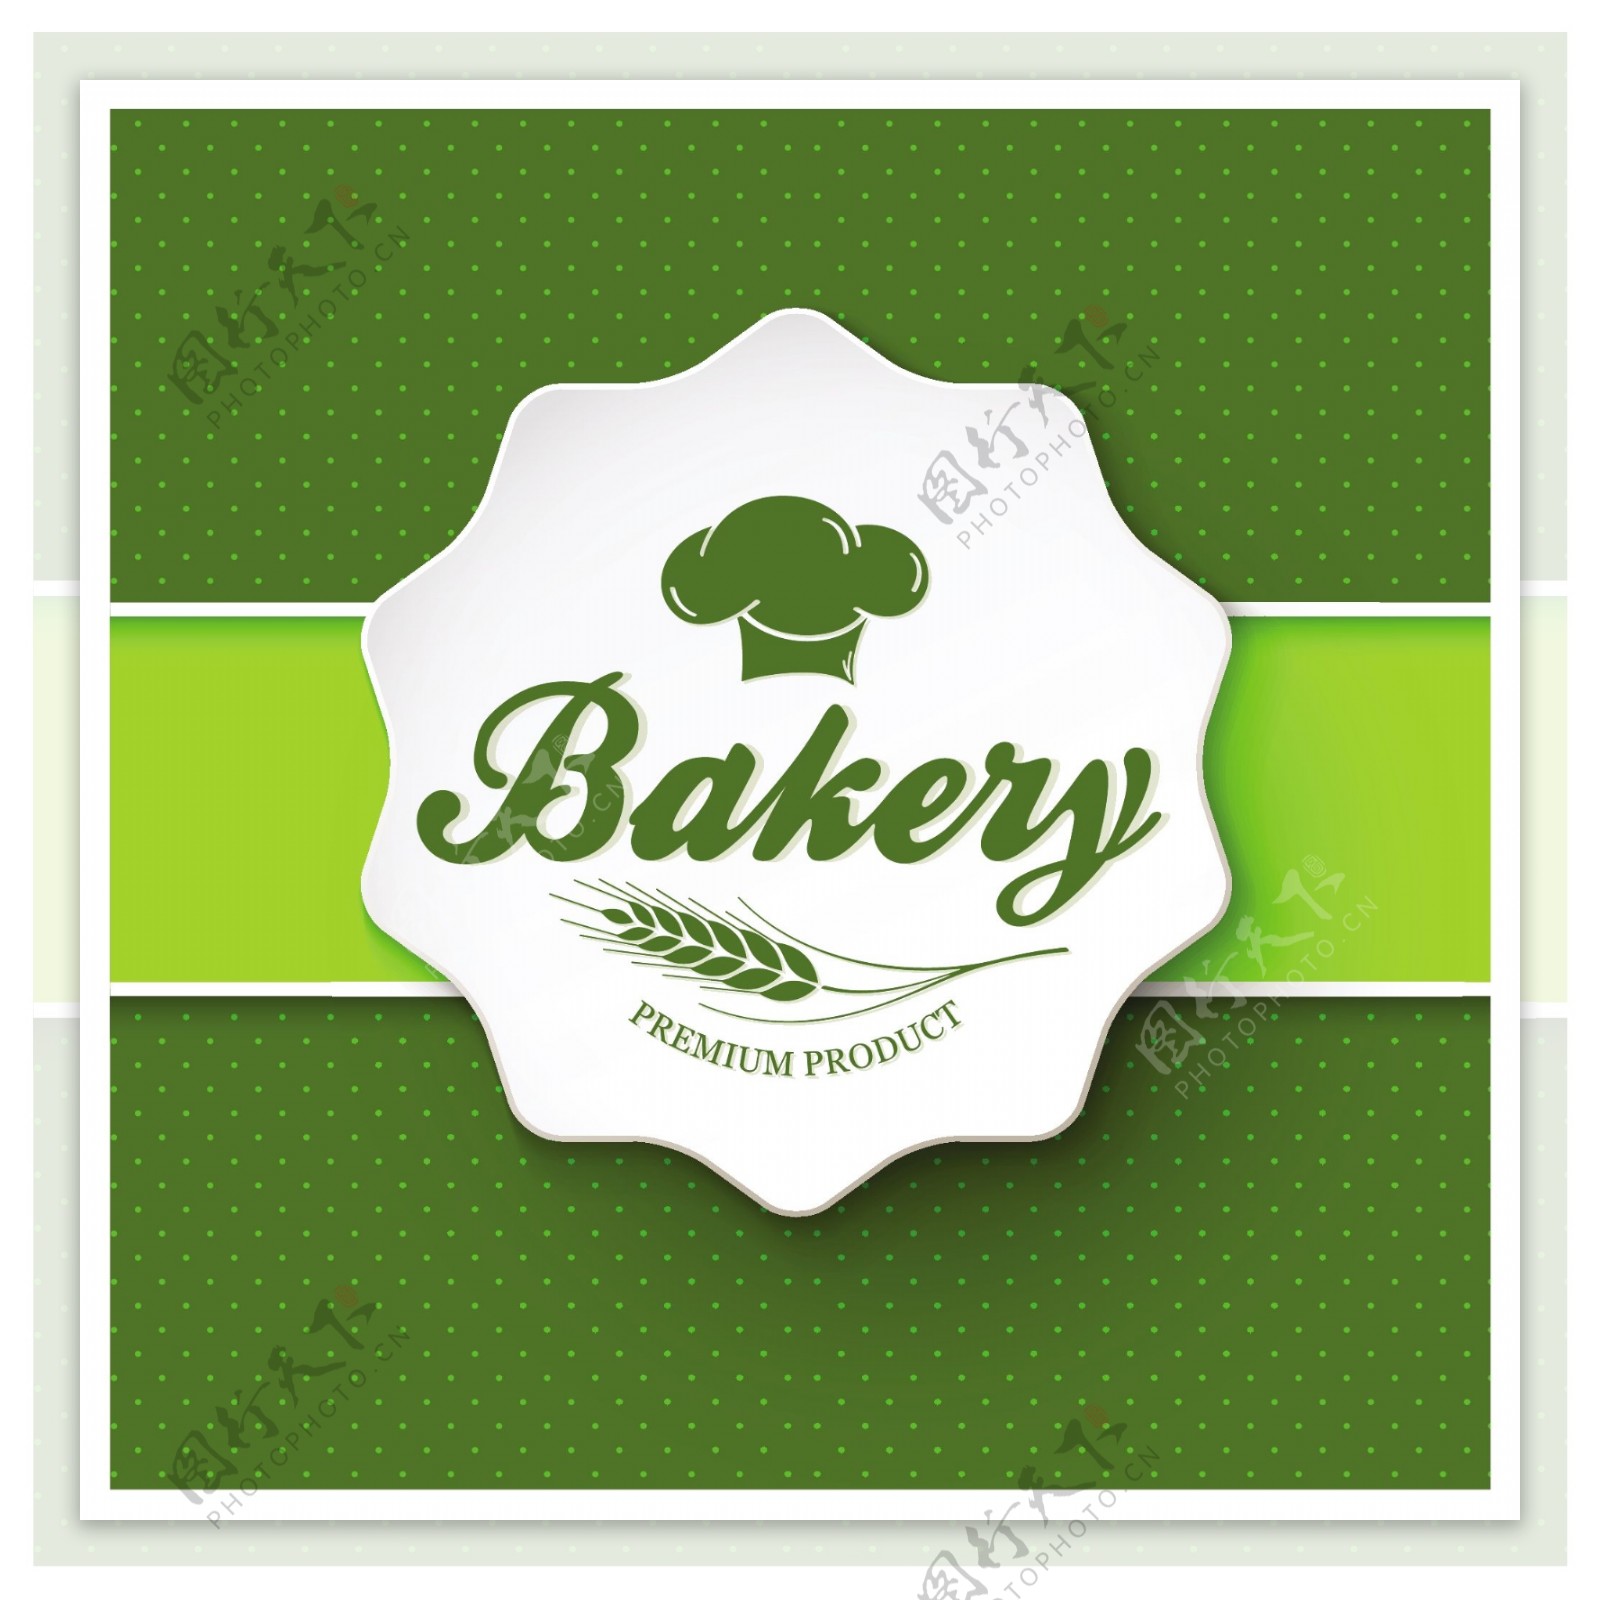 面包店菜单用绿色斑点背景自由向量